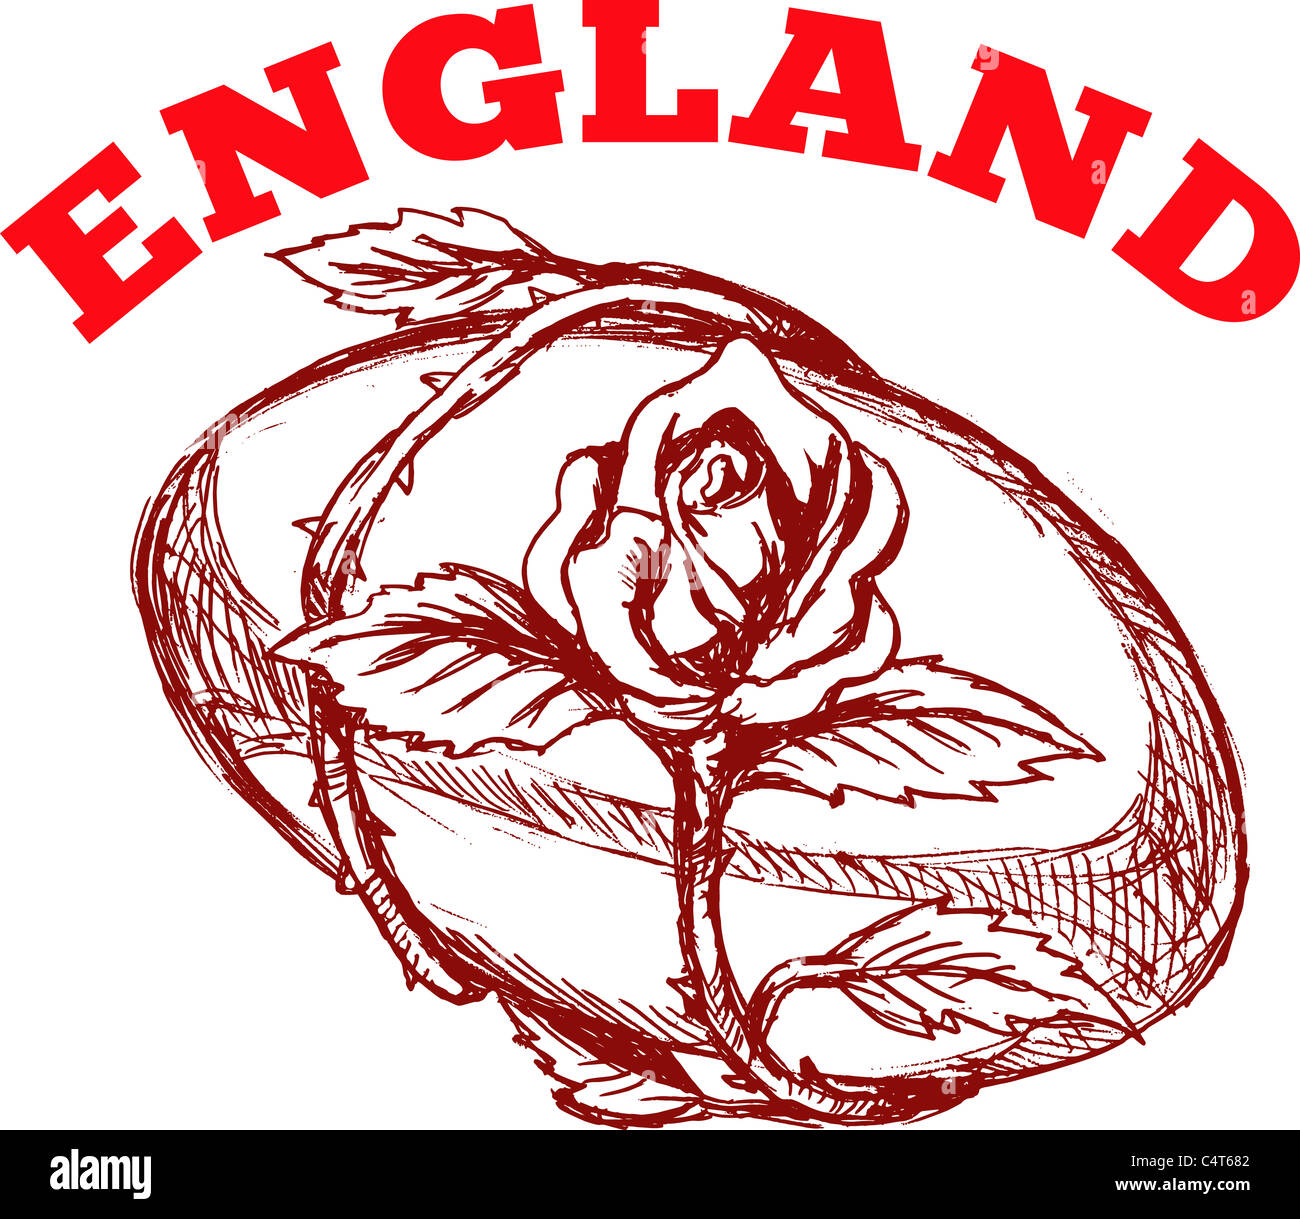 Hand skizzierte Zeichnung Illustration des Rugby-Ball mit rose Blume Ranke umschlungen auf isolierte Hintergrund mit Worten "England" Stockfoto